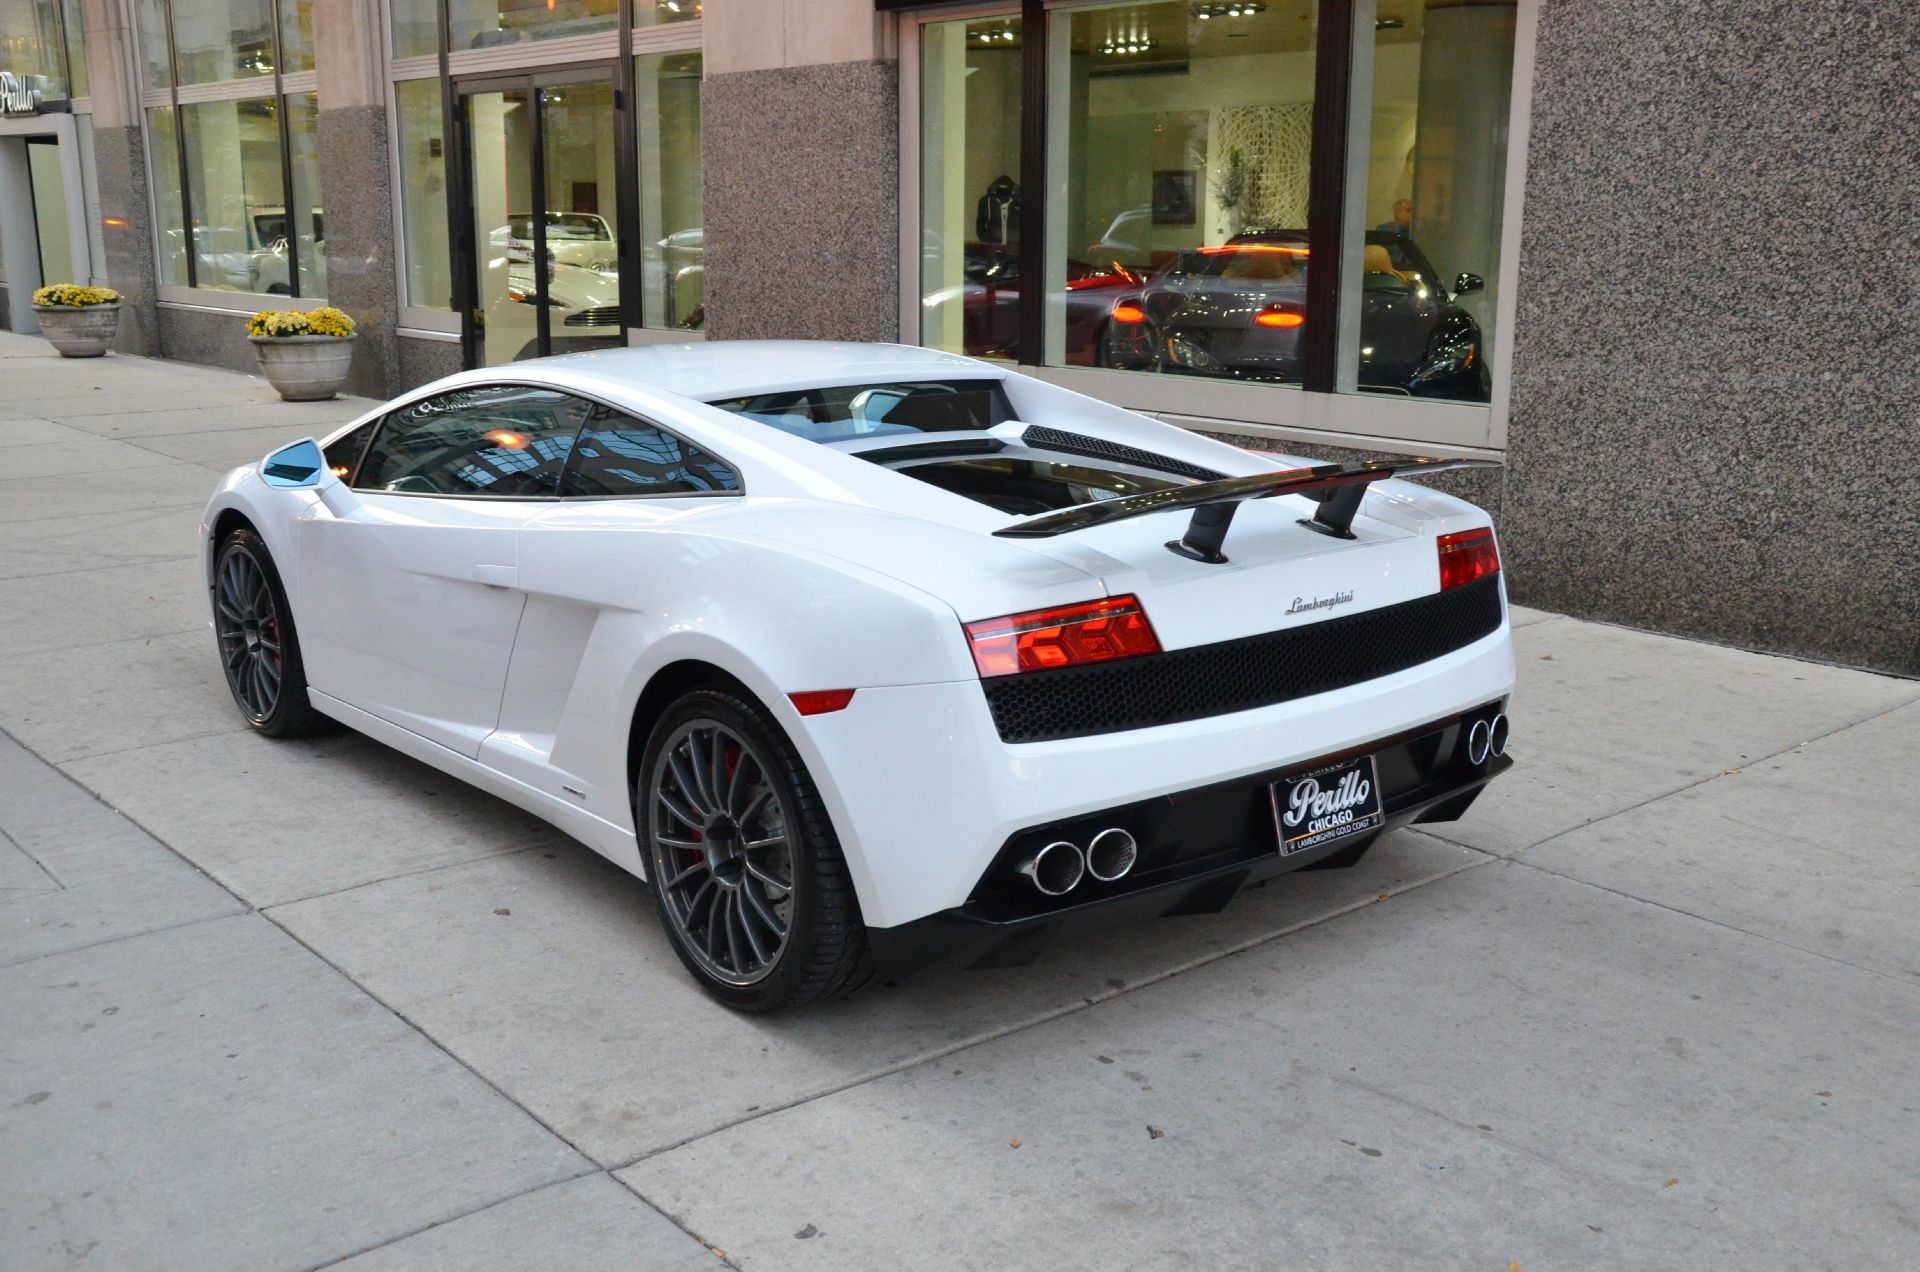 el Lamborghini Gallardo 2014 aparcado fuera de una tienda